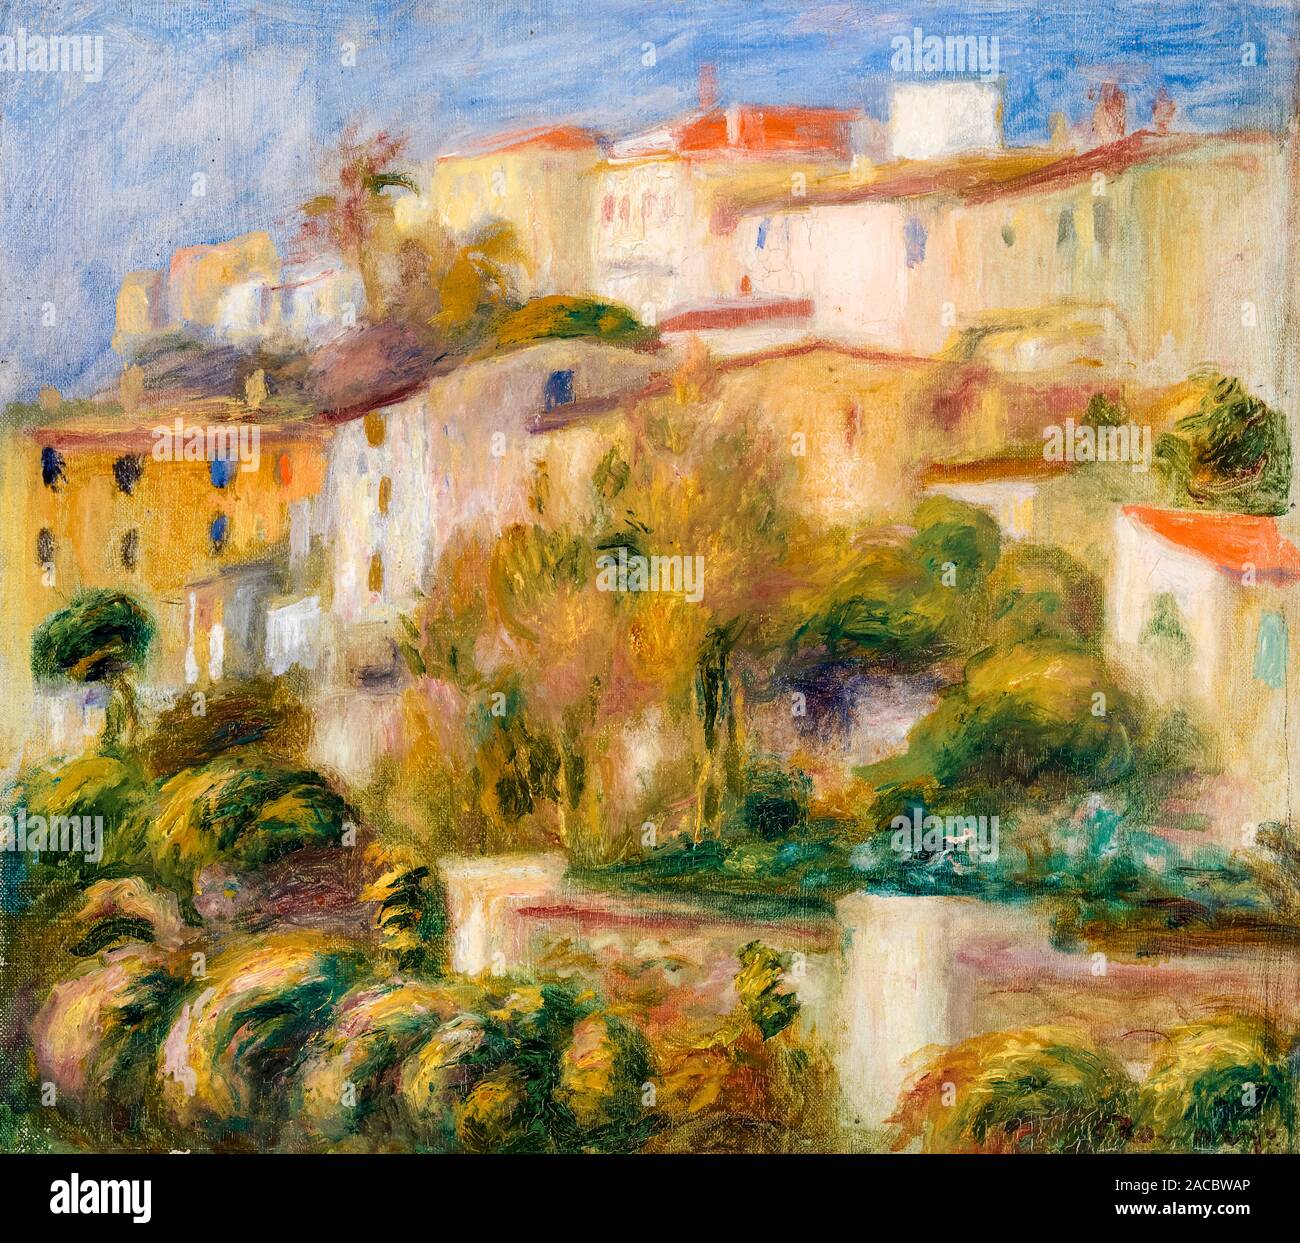 Pierre Auguste Renoir, Houses on a Hill, (Groupe de maisons sur un coteau), landscape painting, 1908 Stock Photo